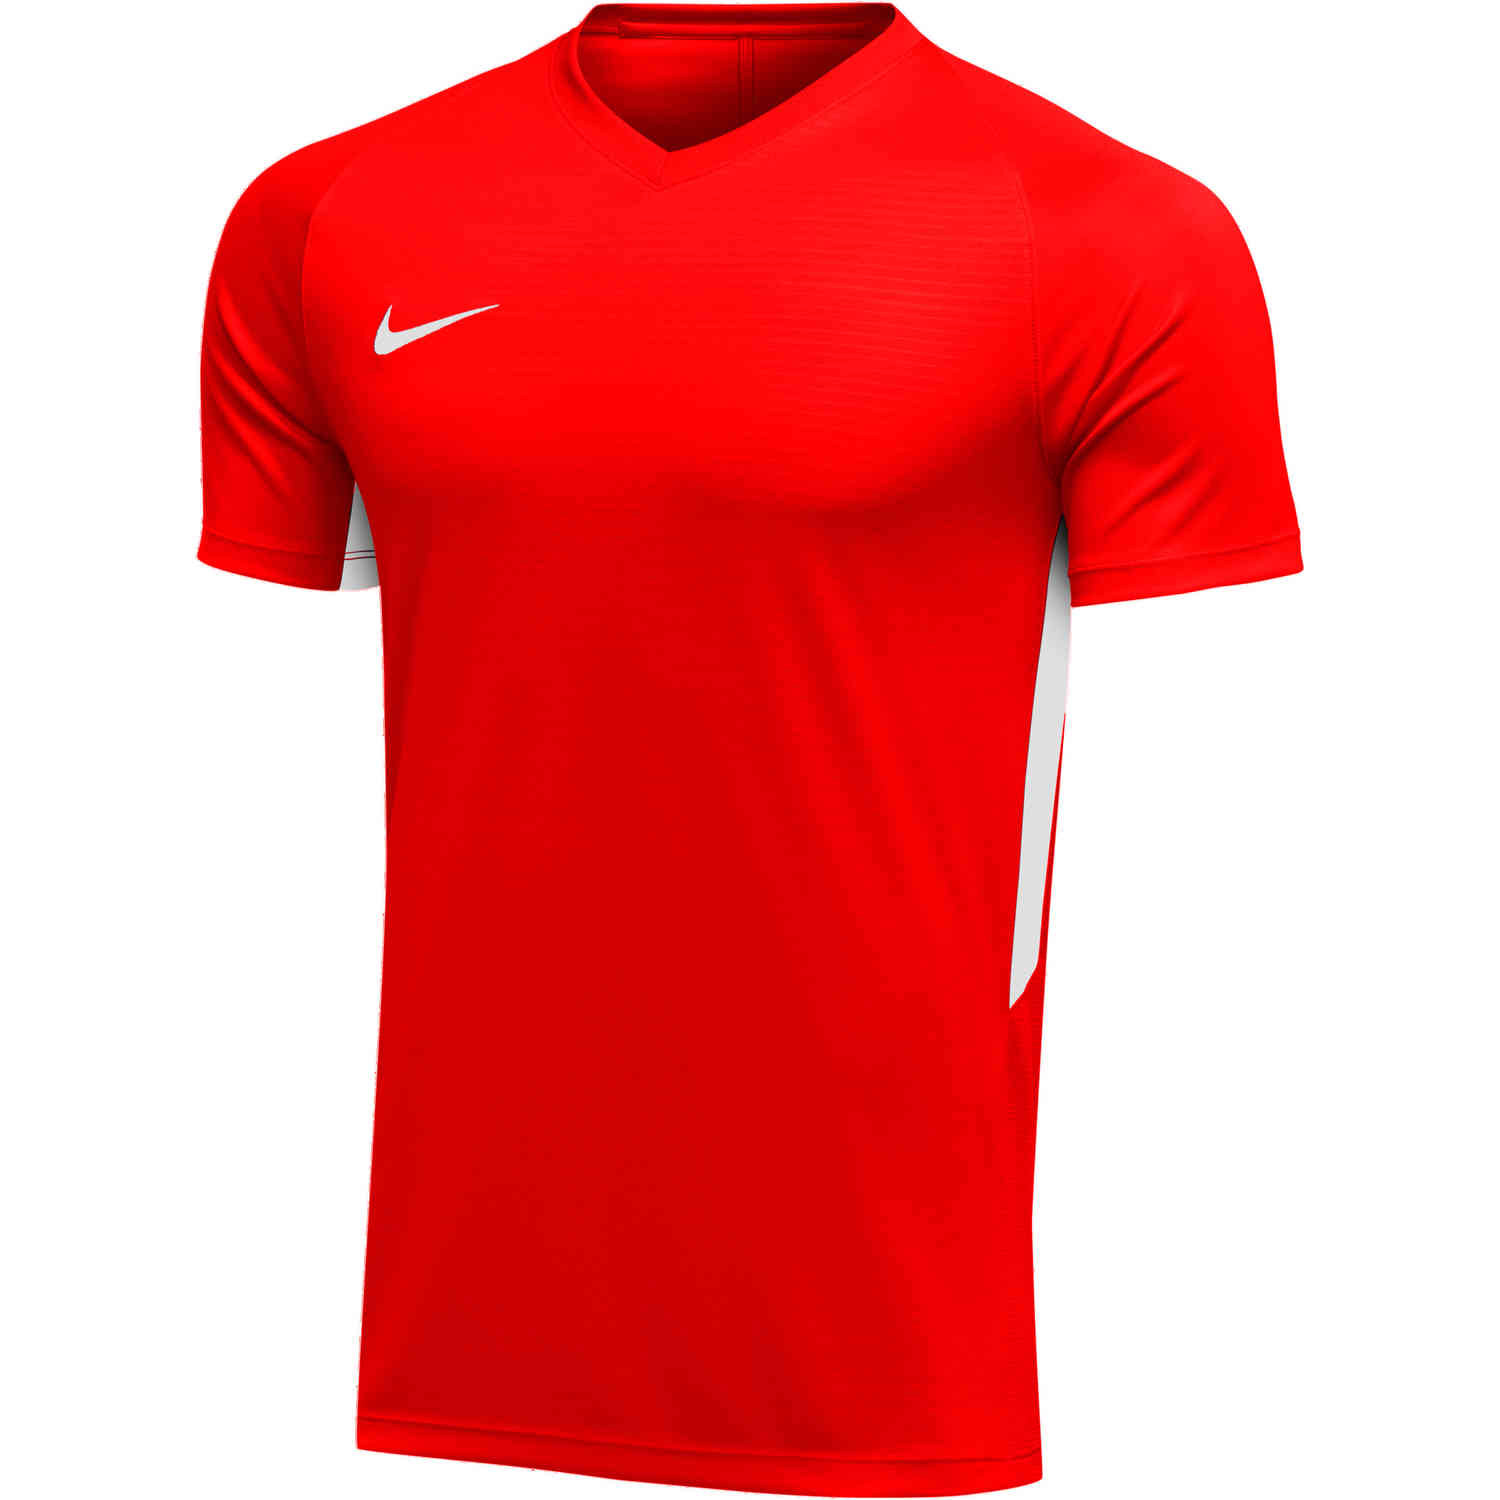 Nike Tiempo Premier Jersey - University Red - SoccerPro